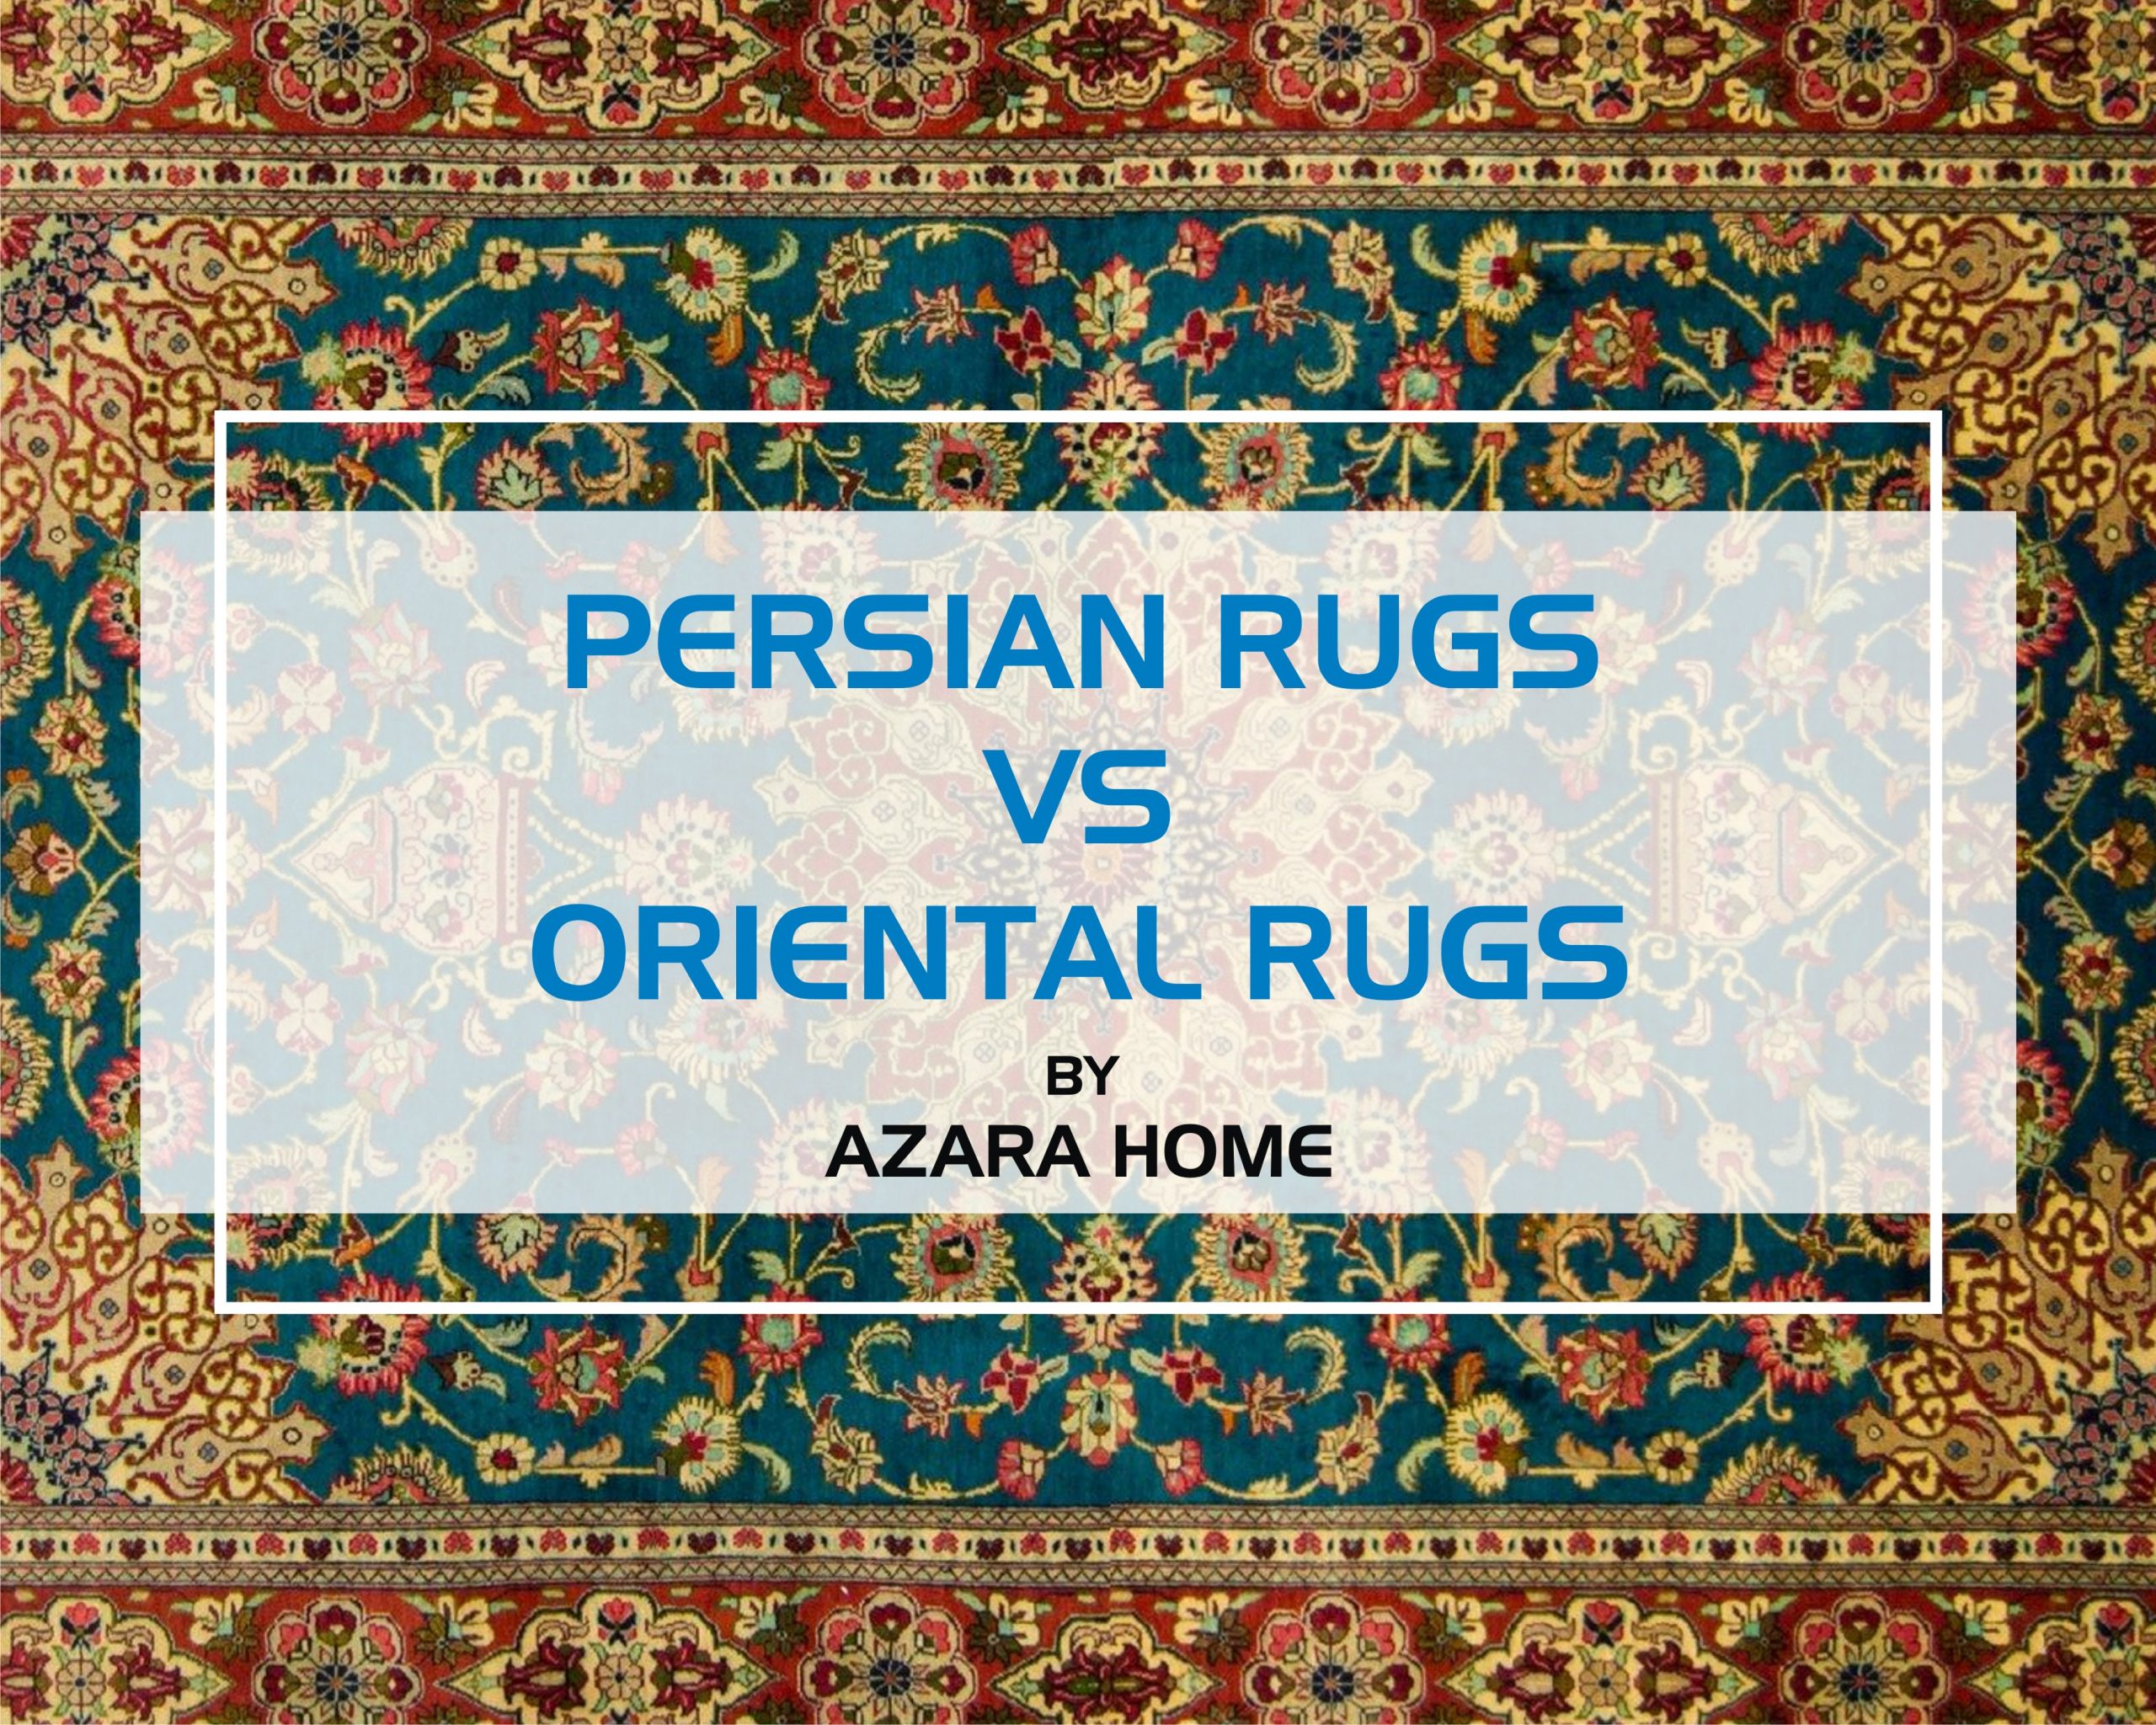 2560px x 2048px - Presian Rug Vs Oriental Rug - Azara Home